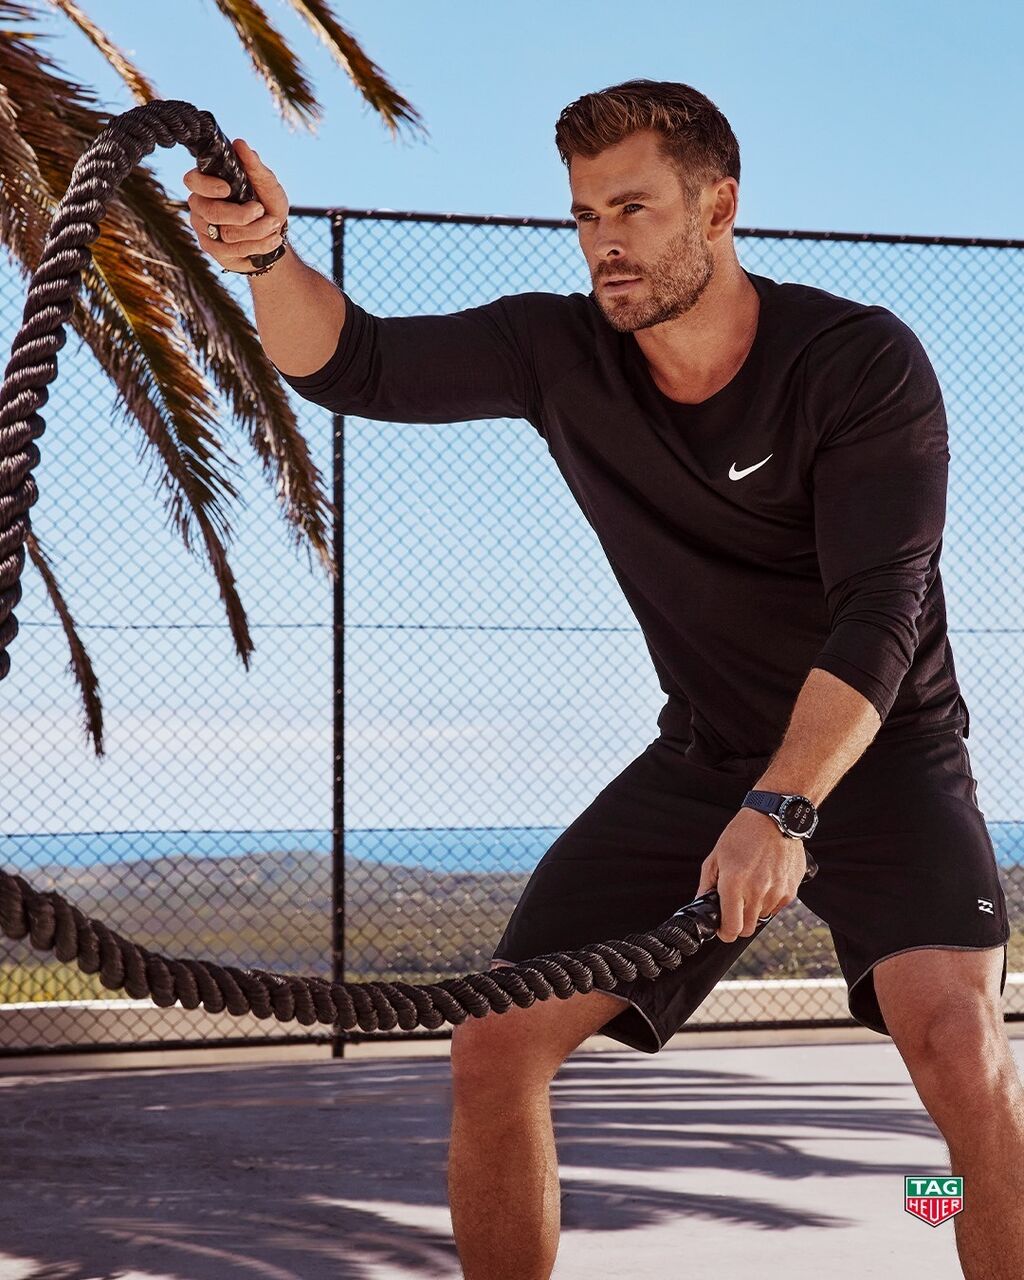 クリス ヘムズワース Nikeのウェア タグホイヤーの腕時計でトレーニング中 メンズセレブファッションニュース